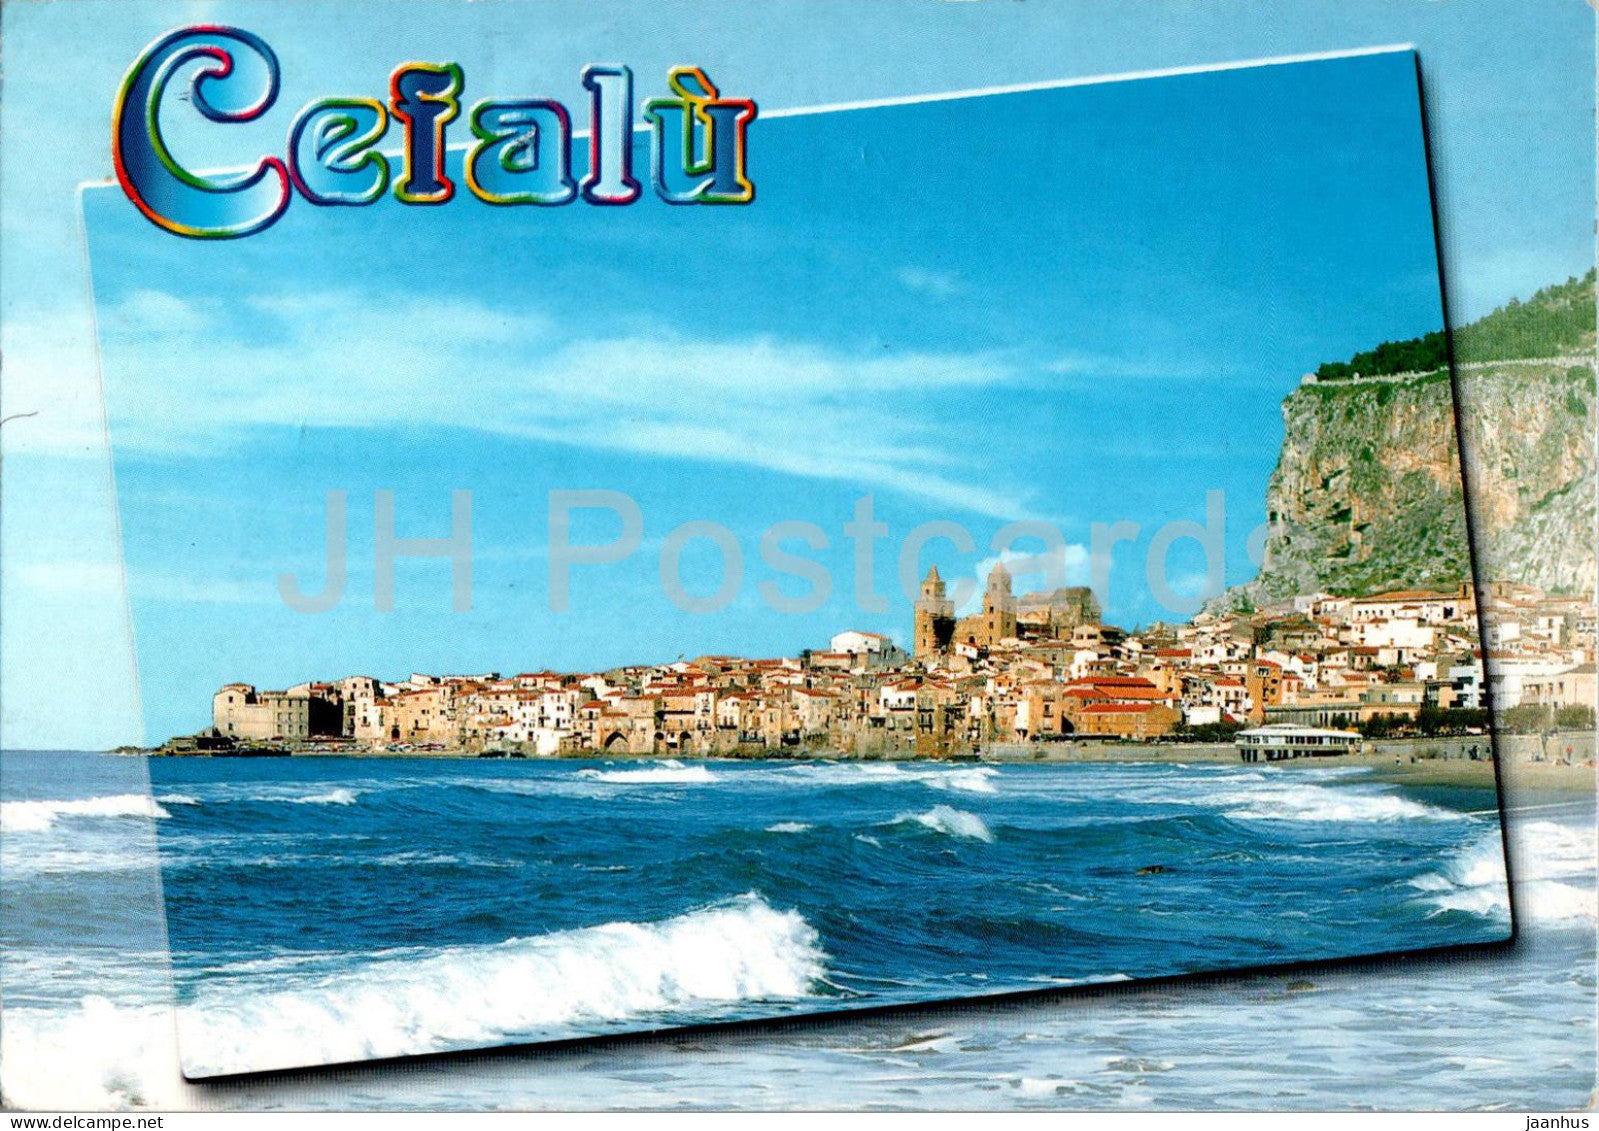 Cefalu - panorama - 2001 - Italy - used - JH Postcards